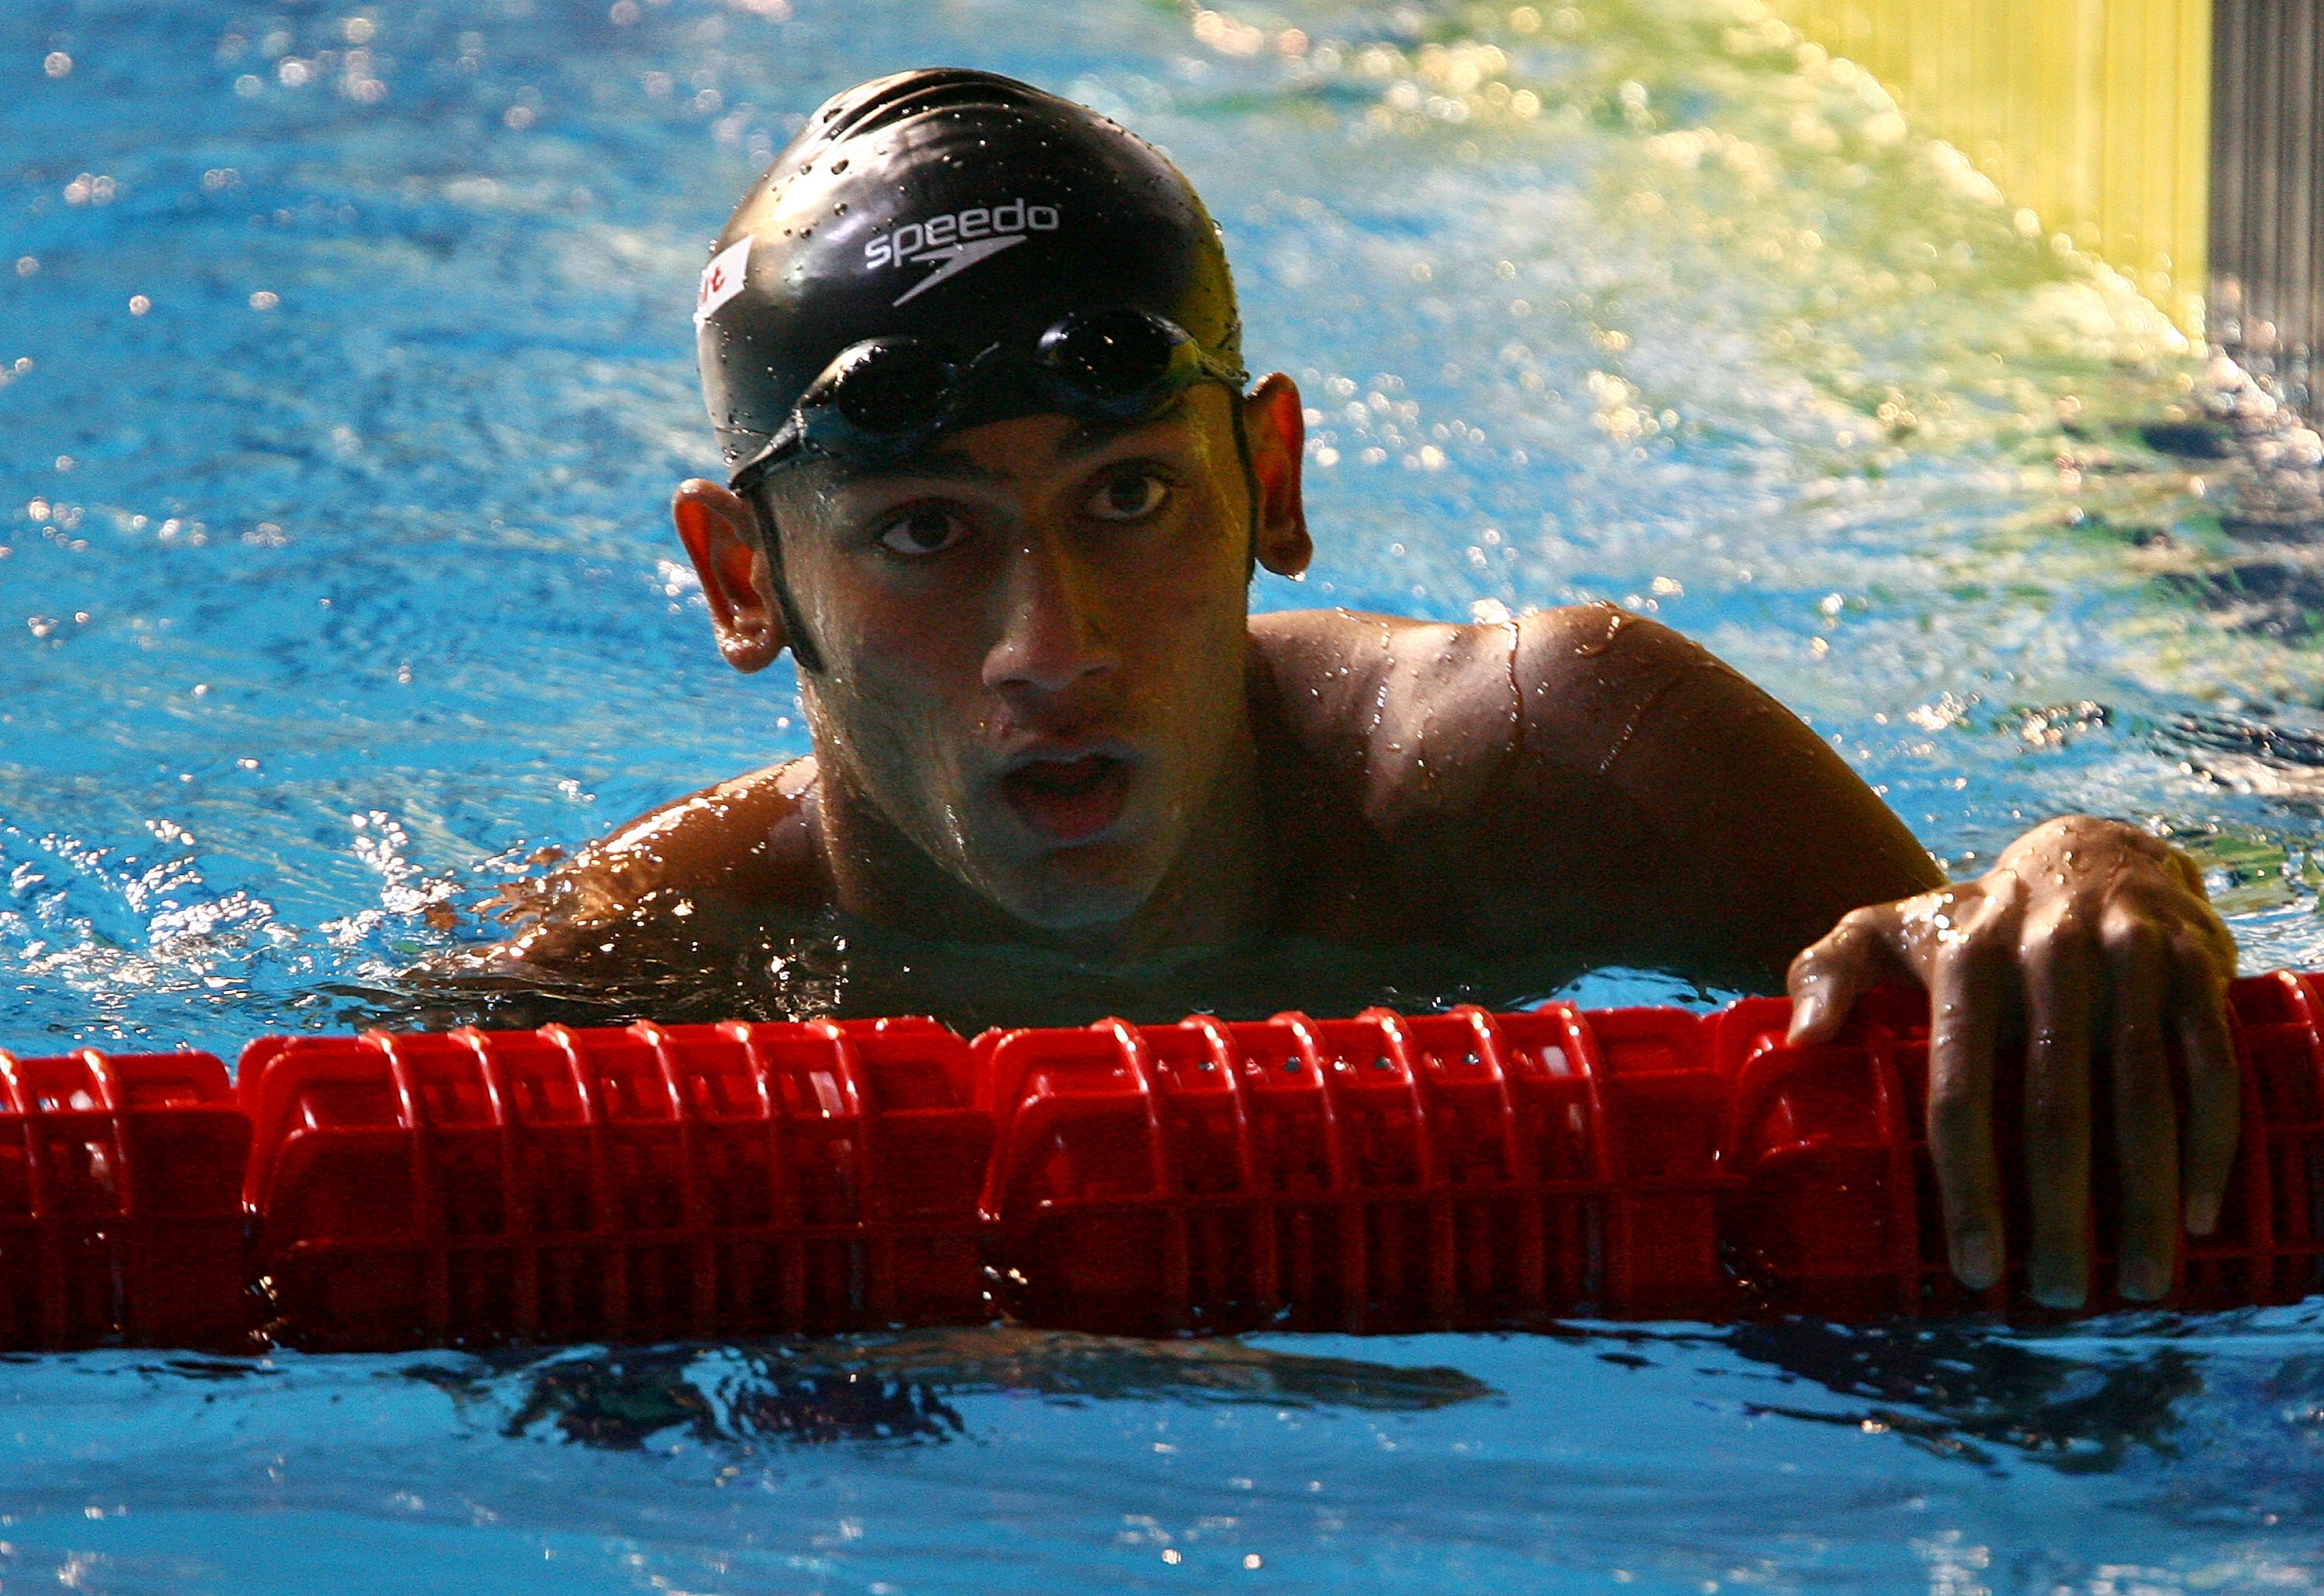 Virdhawal Khade to skip national swimming owing to personal reasons